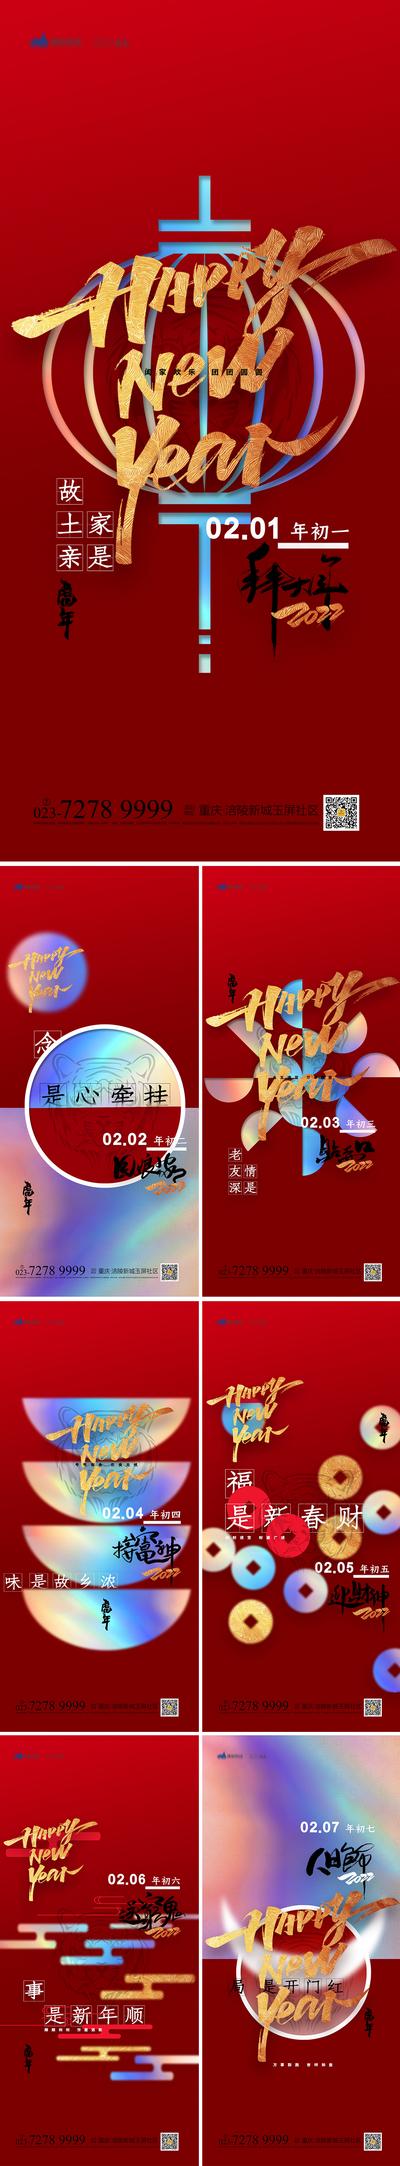 南门网 海报 地产 中国传统节日 春节 酸性 潮流 除夕 新年